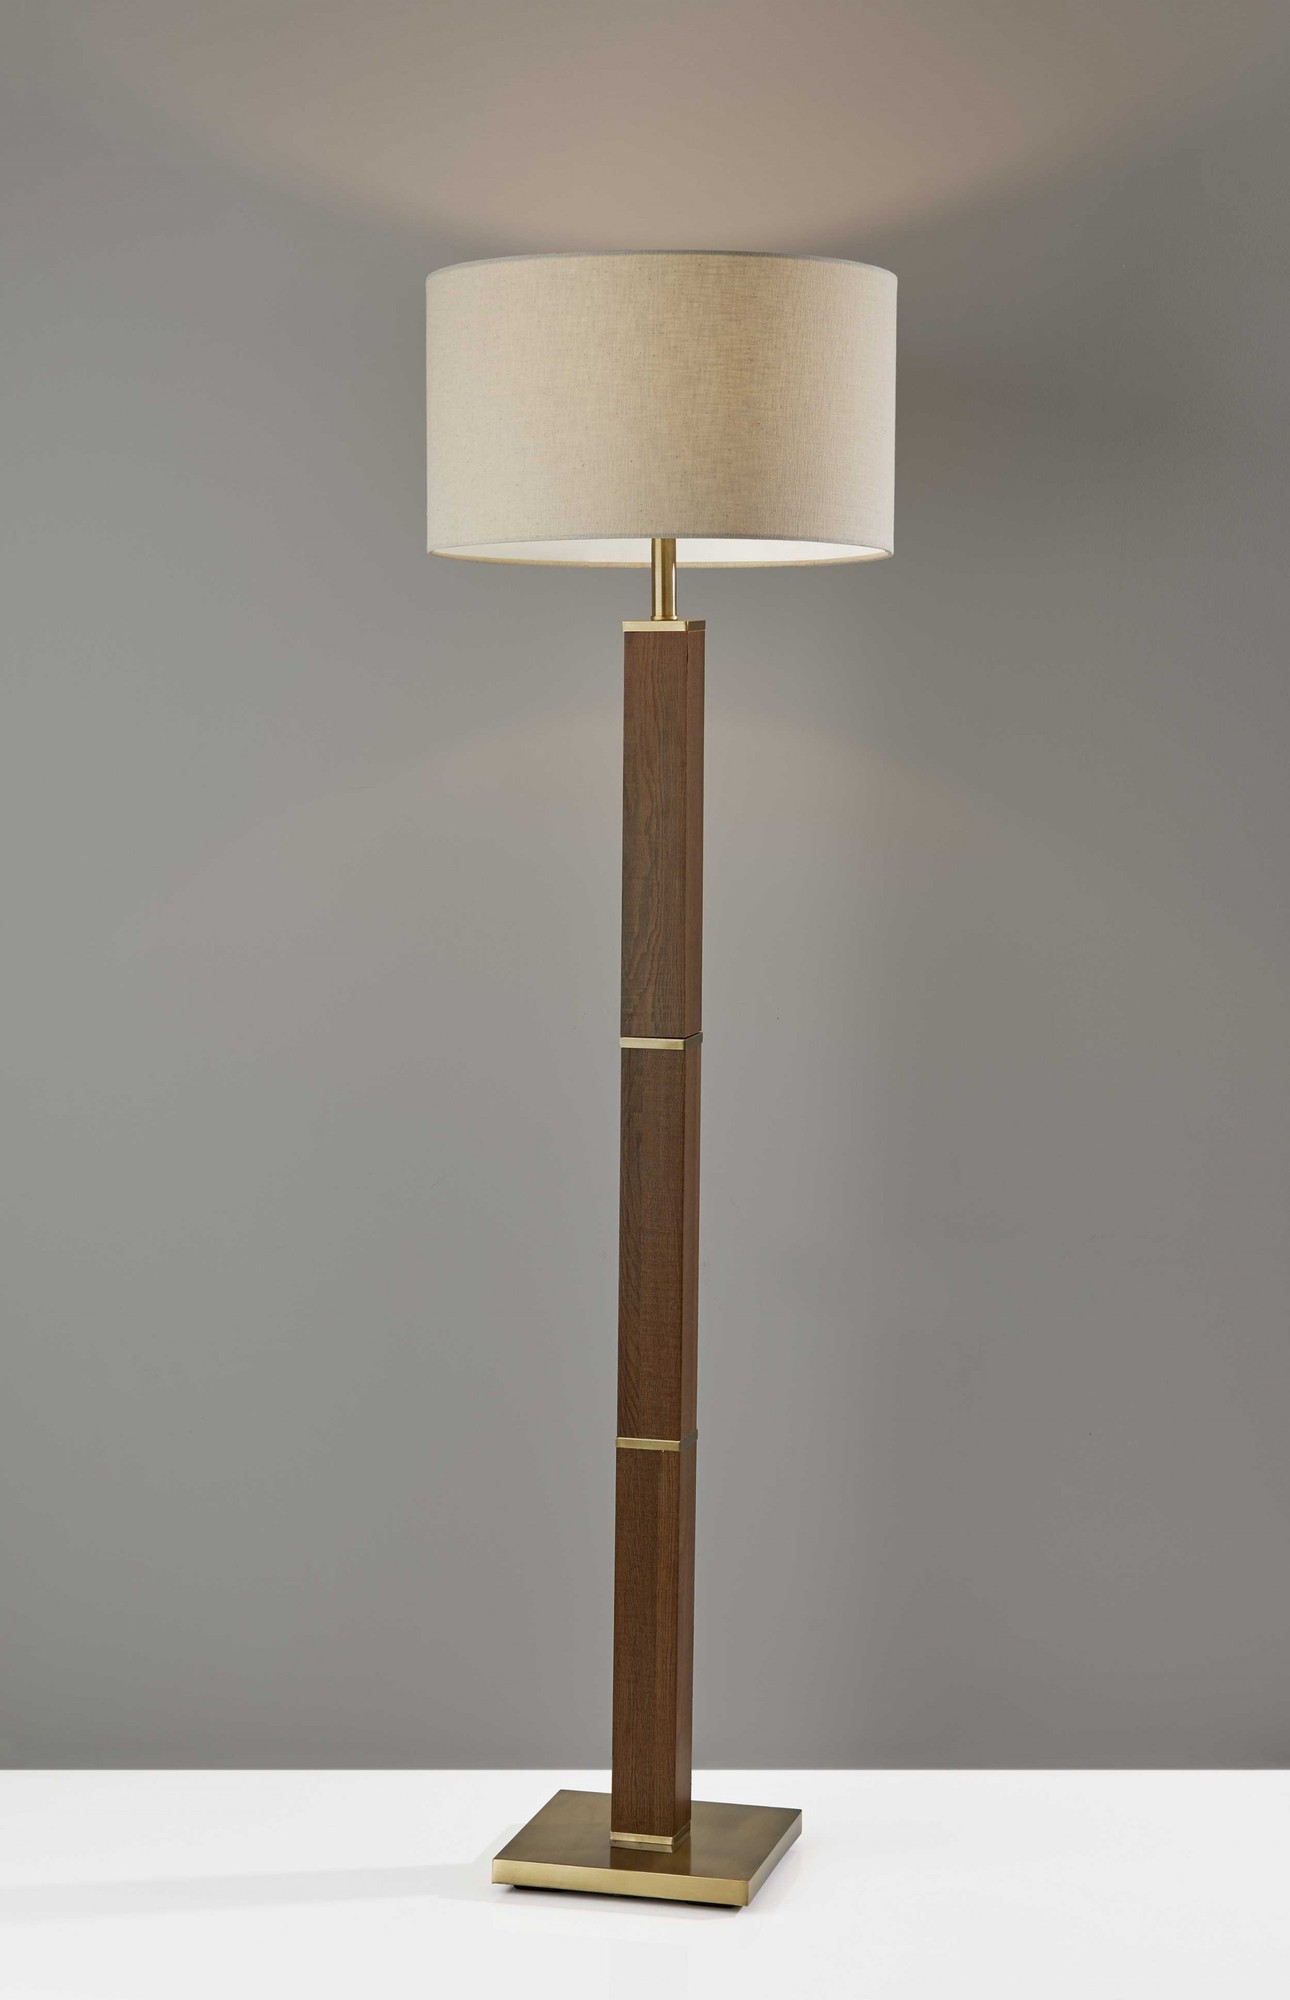 18" X 18" X 61.5" Antique Brass Wood Floor Lamp